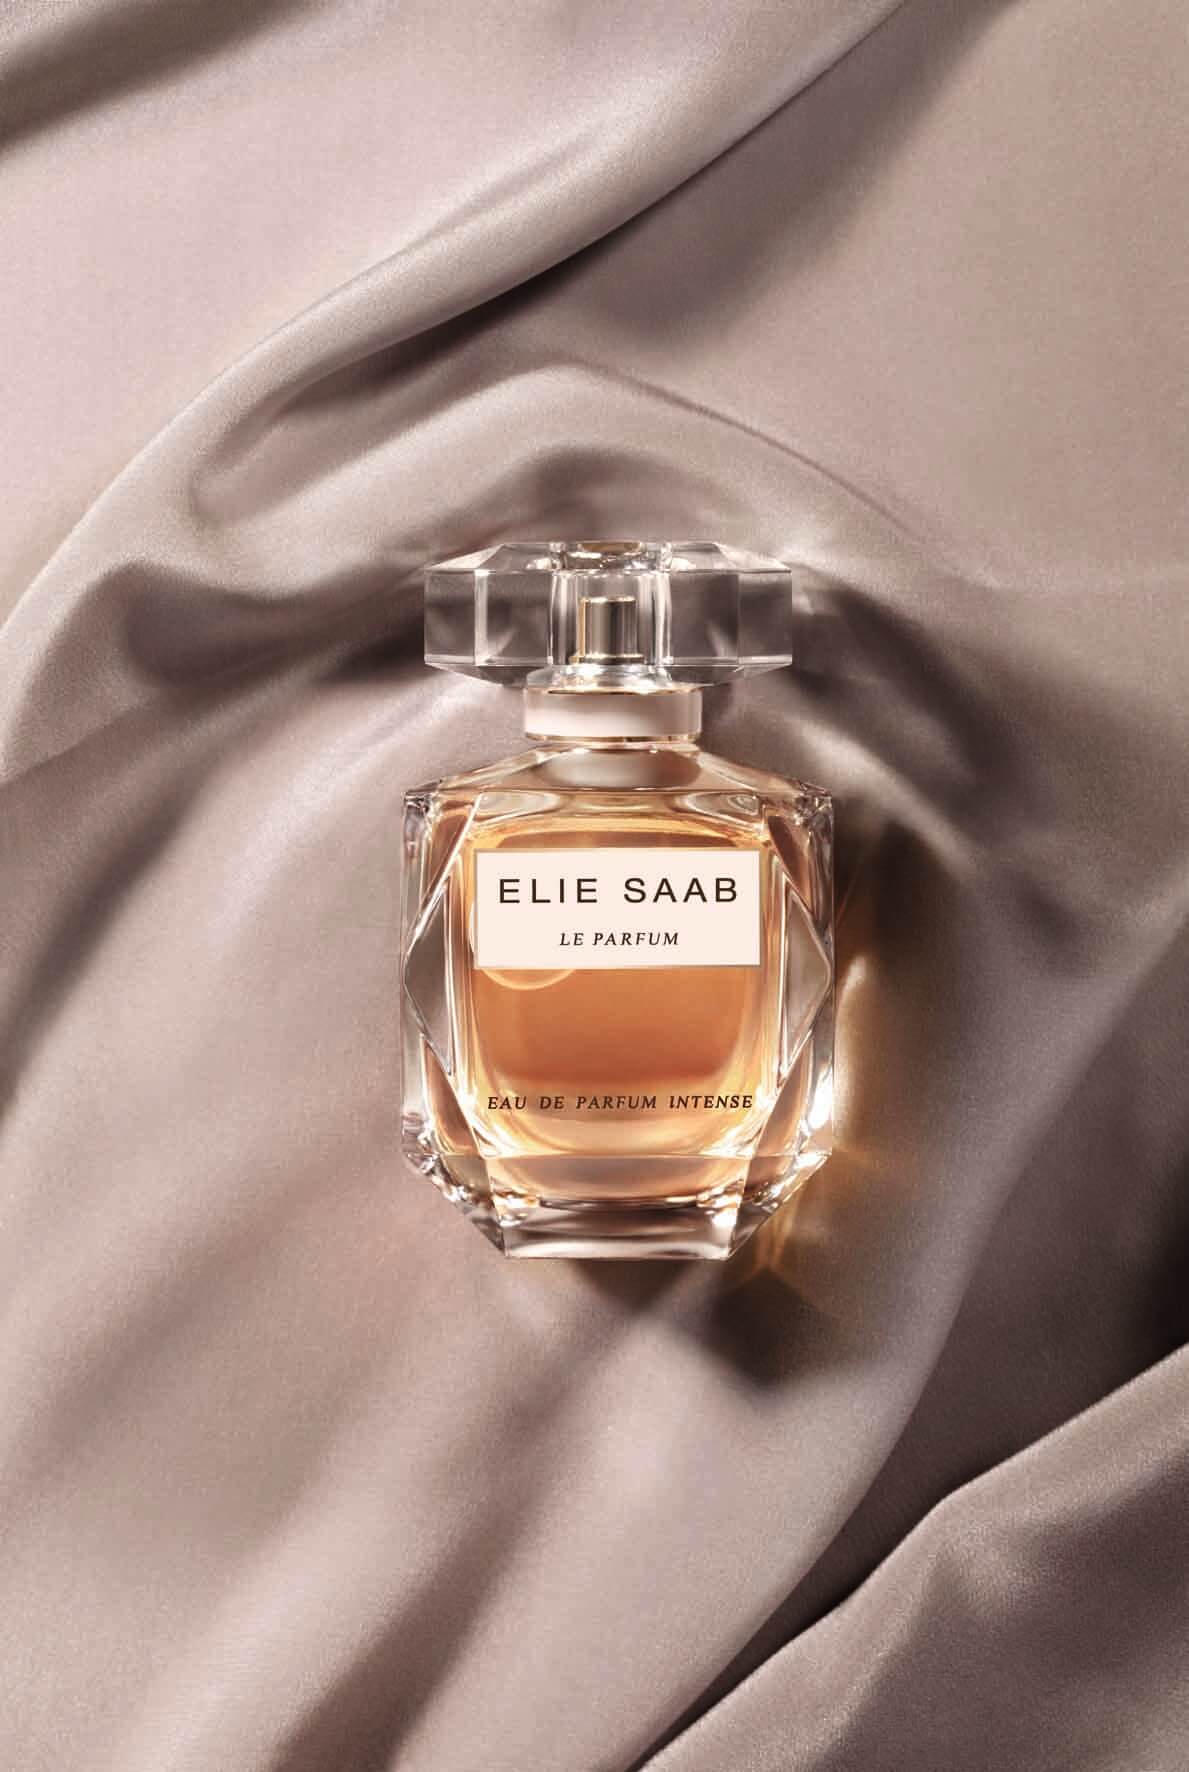 Elie Saab Eau de Parfum Intense น้ำหอมลำดับที่สาม กลิ่นใหม่ล่าสุดของเอลี ซาบ แนวคิดแห่งแสงสว่างมาสร้างสรรค์ความหรูหราเลอเลิศให้บังเกิดแก่มวลอิสตรี เป็นบทนิยามเสน่ห์เย้ายวนในความเป็นผู้หญิงขนานแท้   กลิ่นหอมที่ให้กลิ่นหอมสดชื่น พร้อมเซ็กซี่ในตัว ดั่งหญิงสาวผู้มั่นใจ สง่างาม 